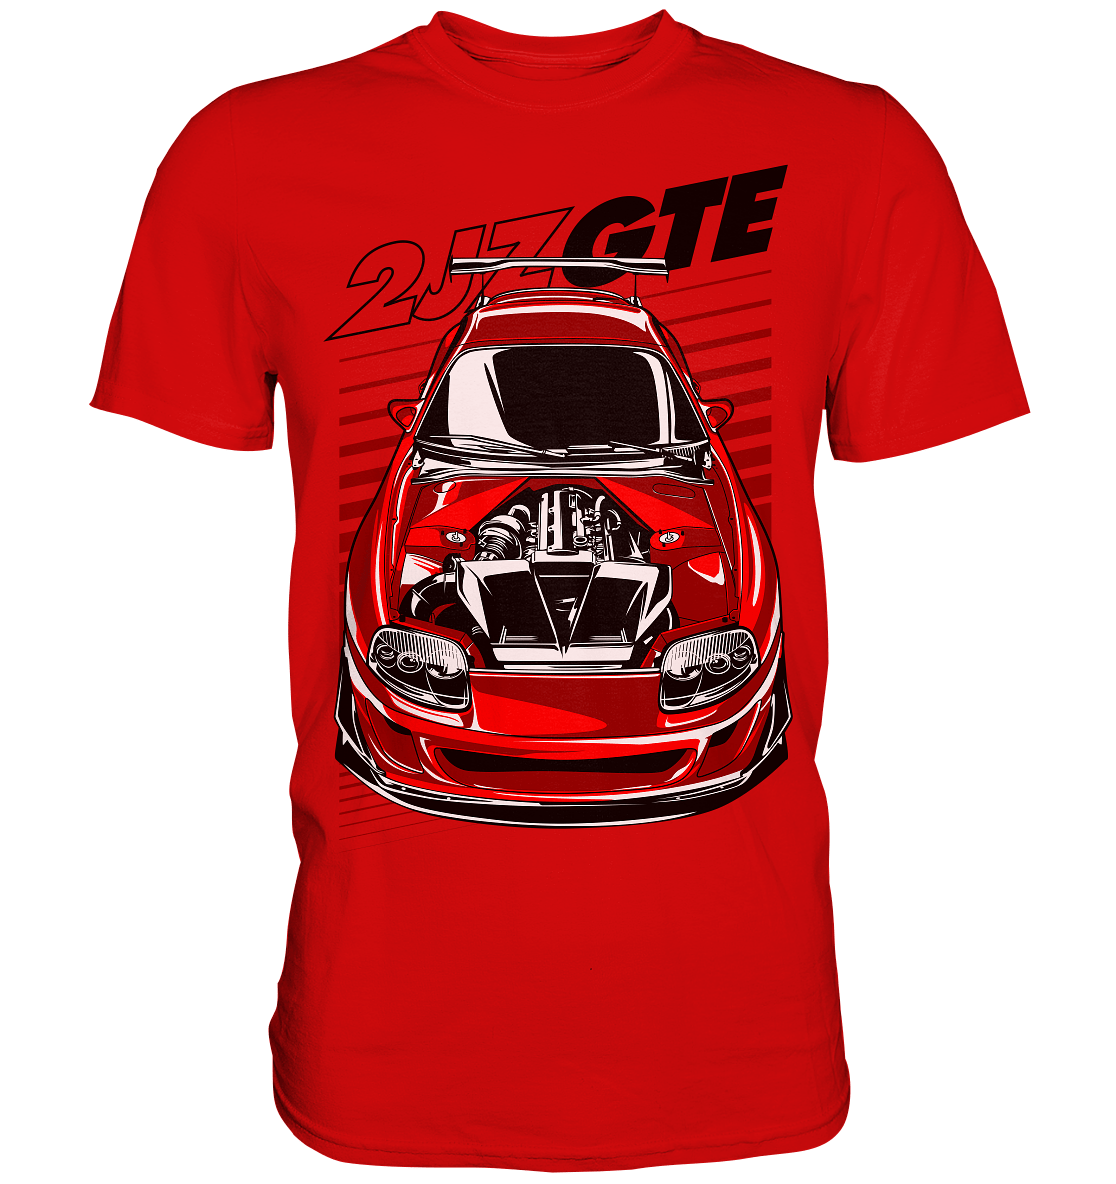 2JZ GTE MK4 - Premium Shirt - MotoMerch.de